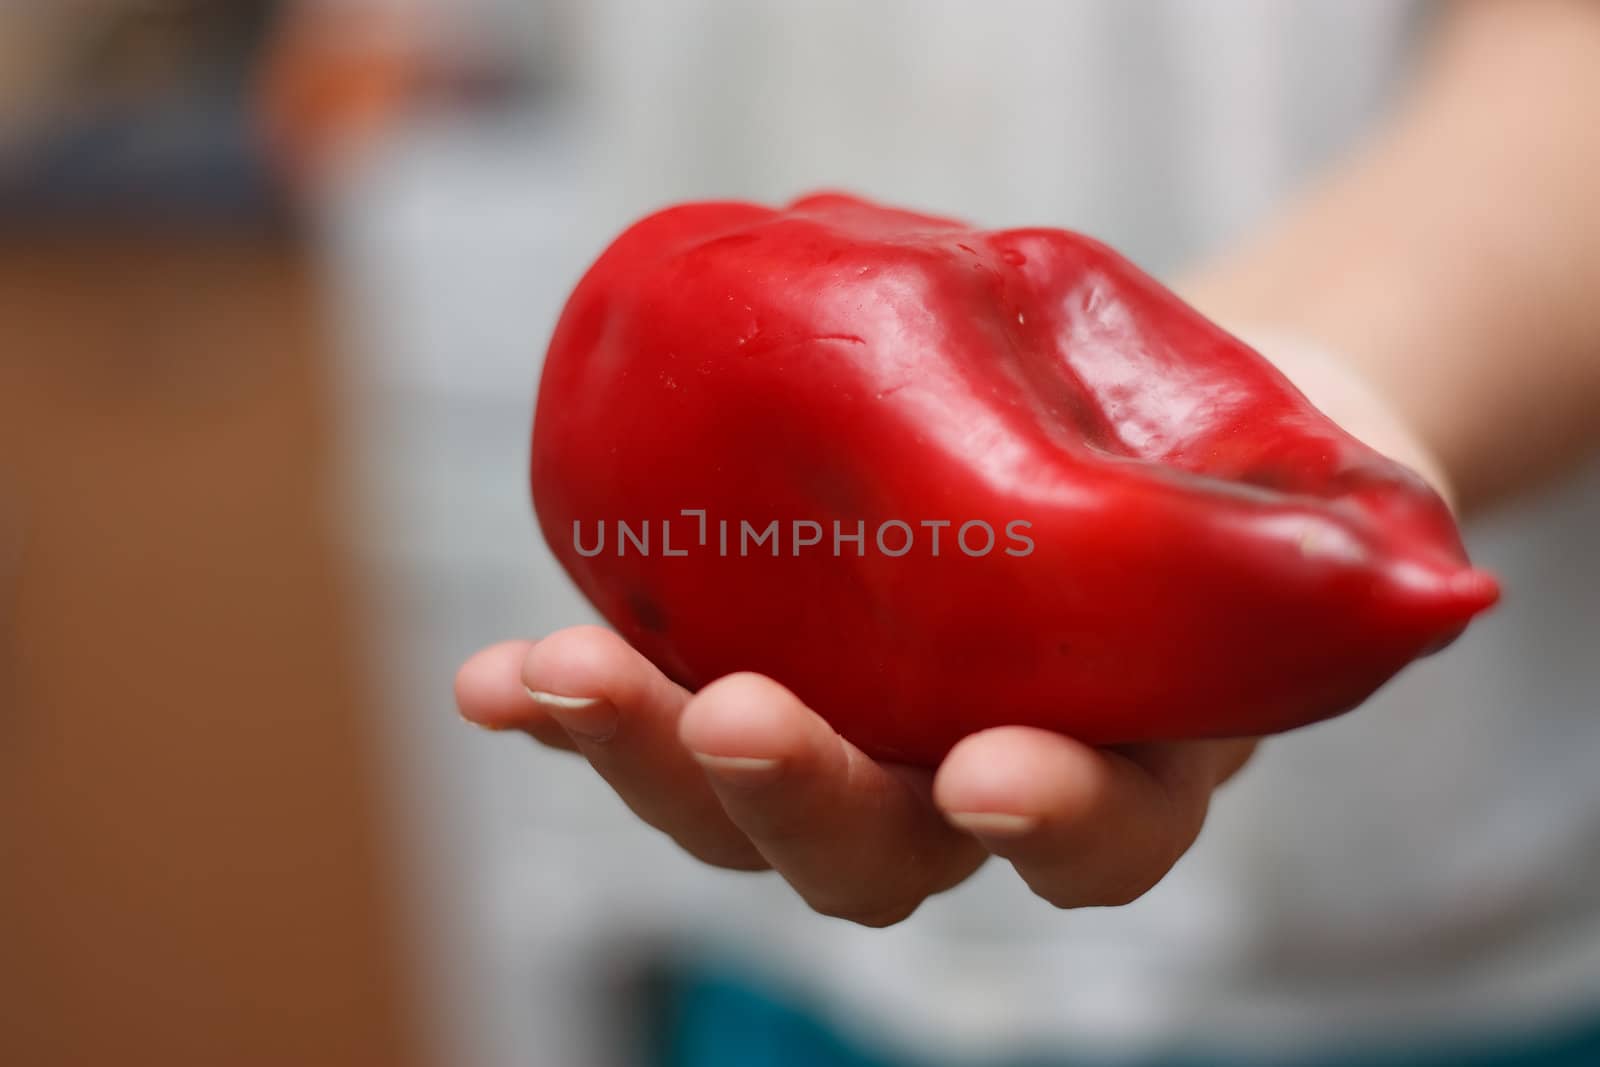 Pepper in hand. by nigerfoxy